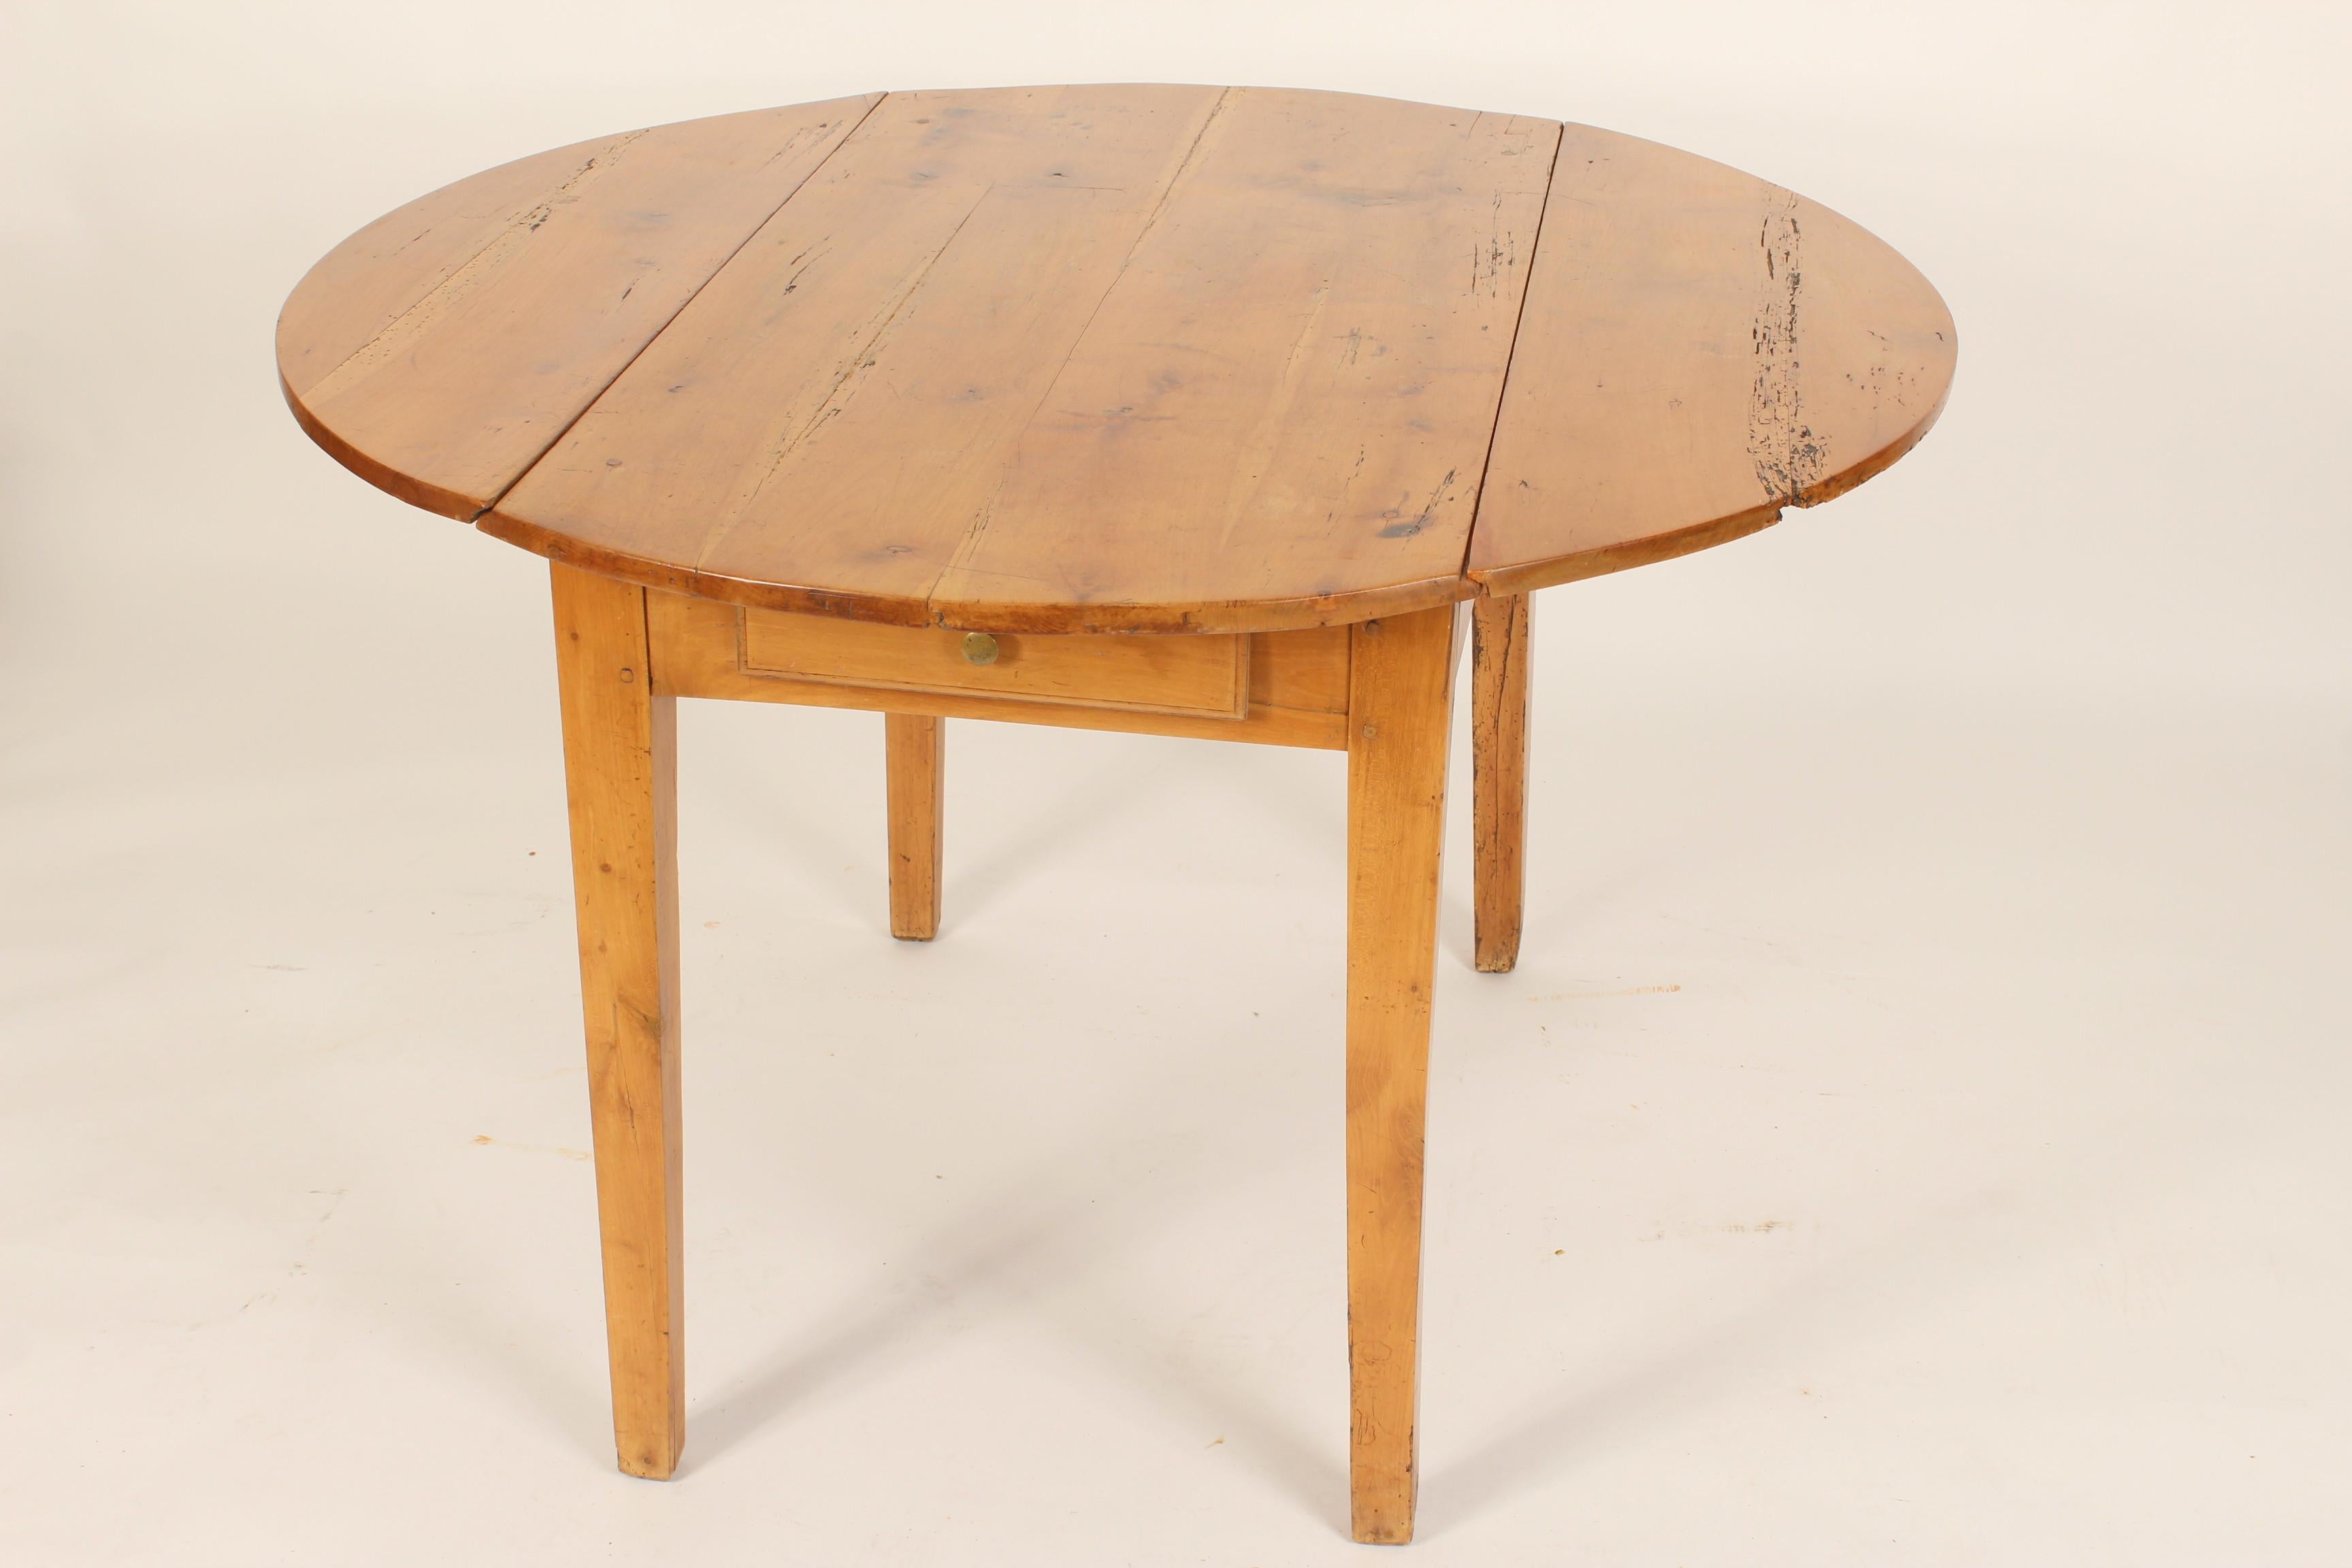 European Antique Directoire Style Pine Drop-Leaf Table